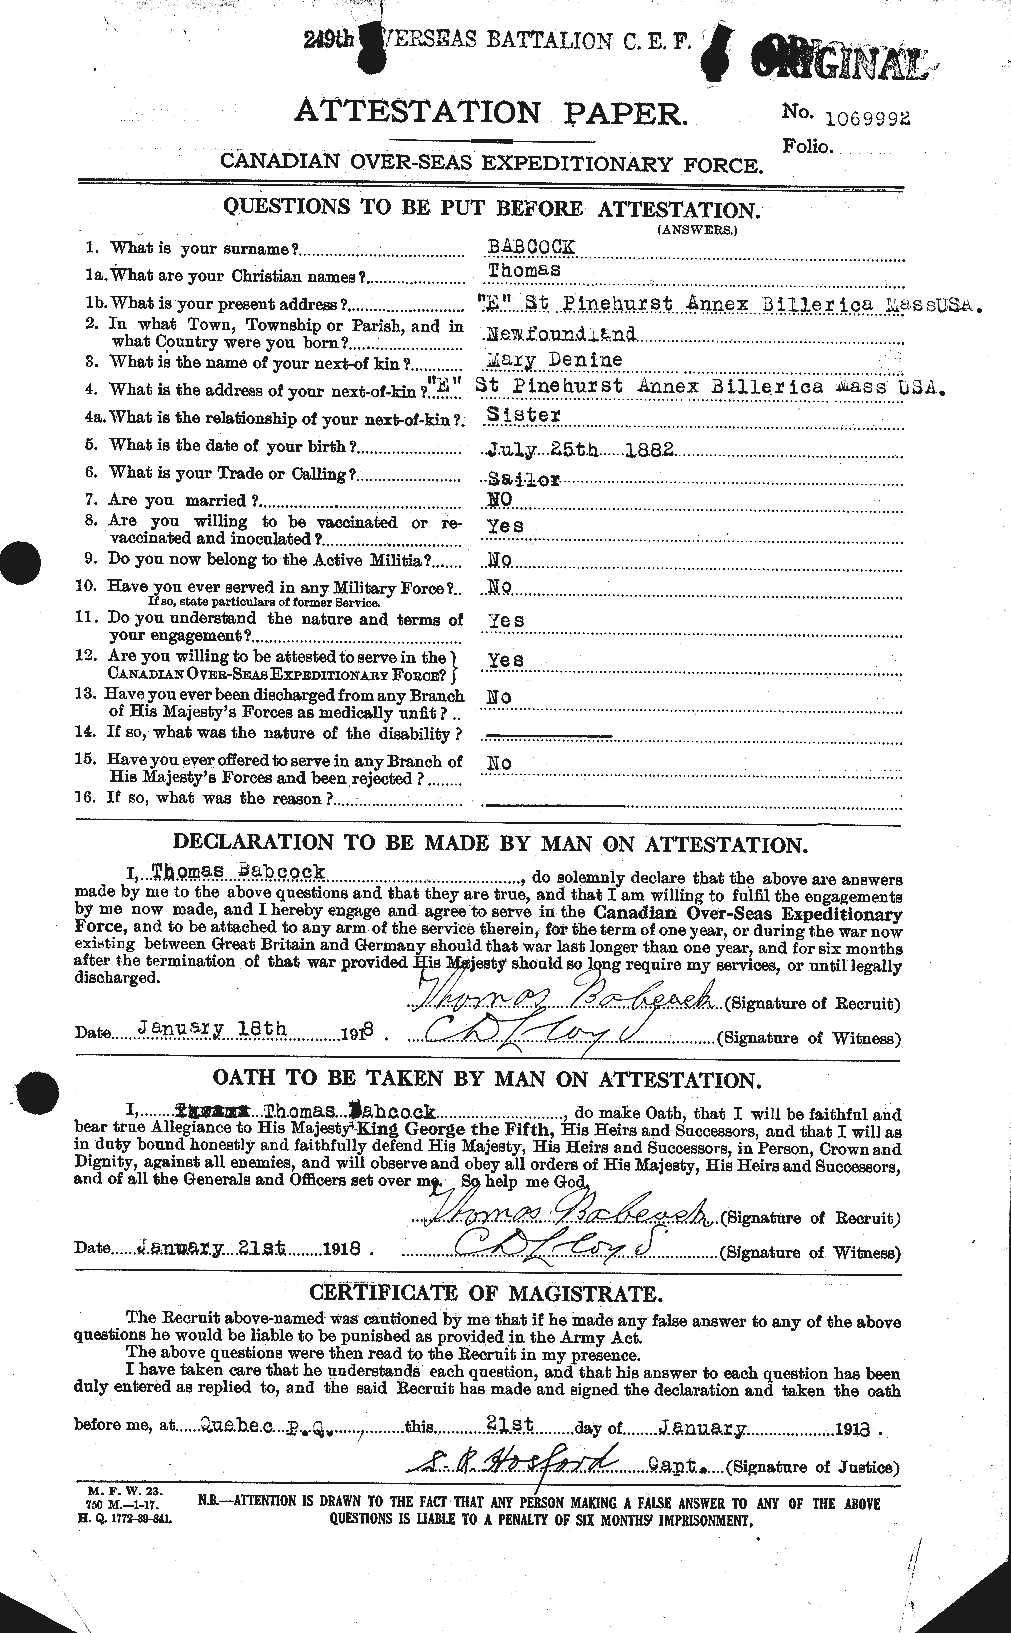 Dossiers du Personnel de la Première Guerre mondiale - CEC 218201a